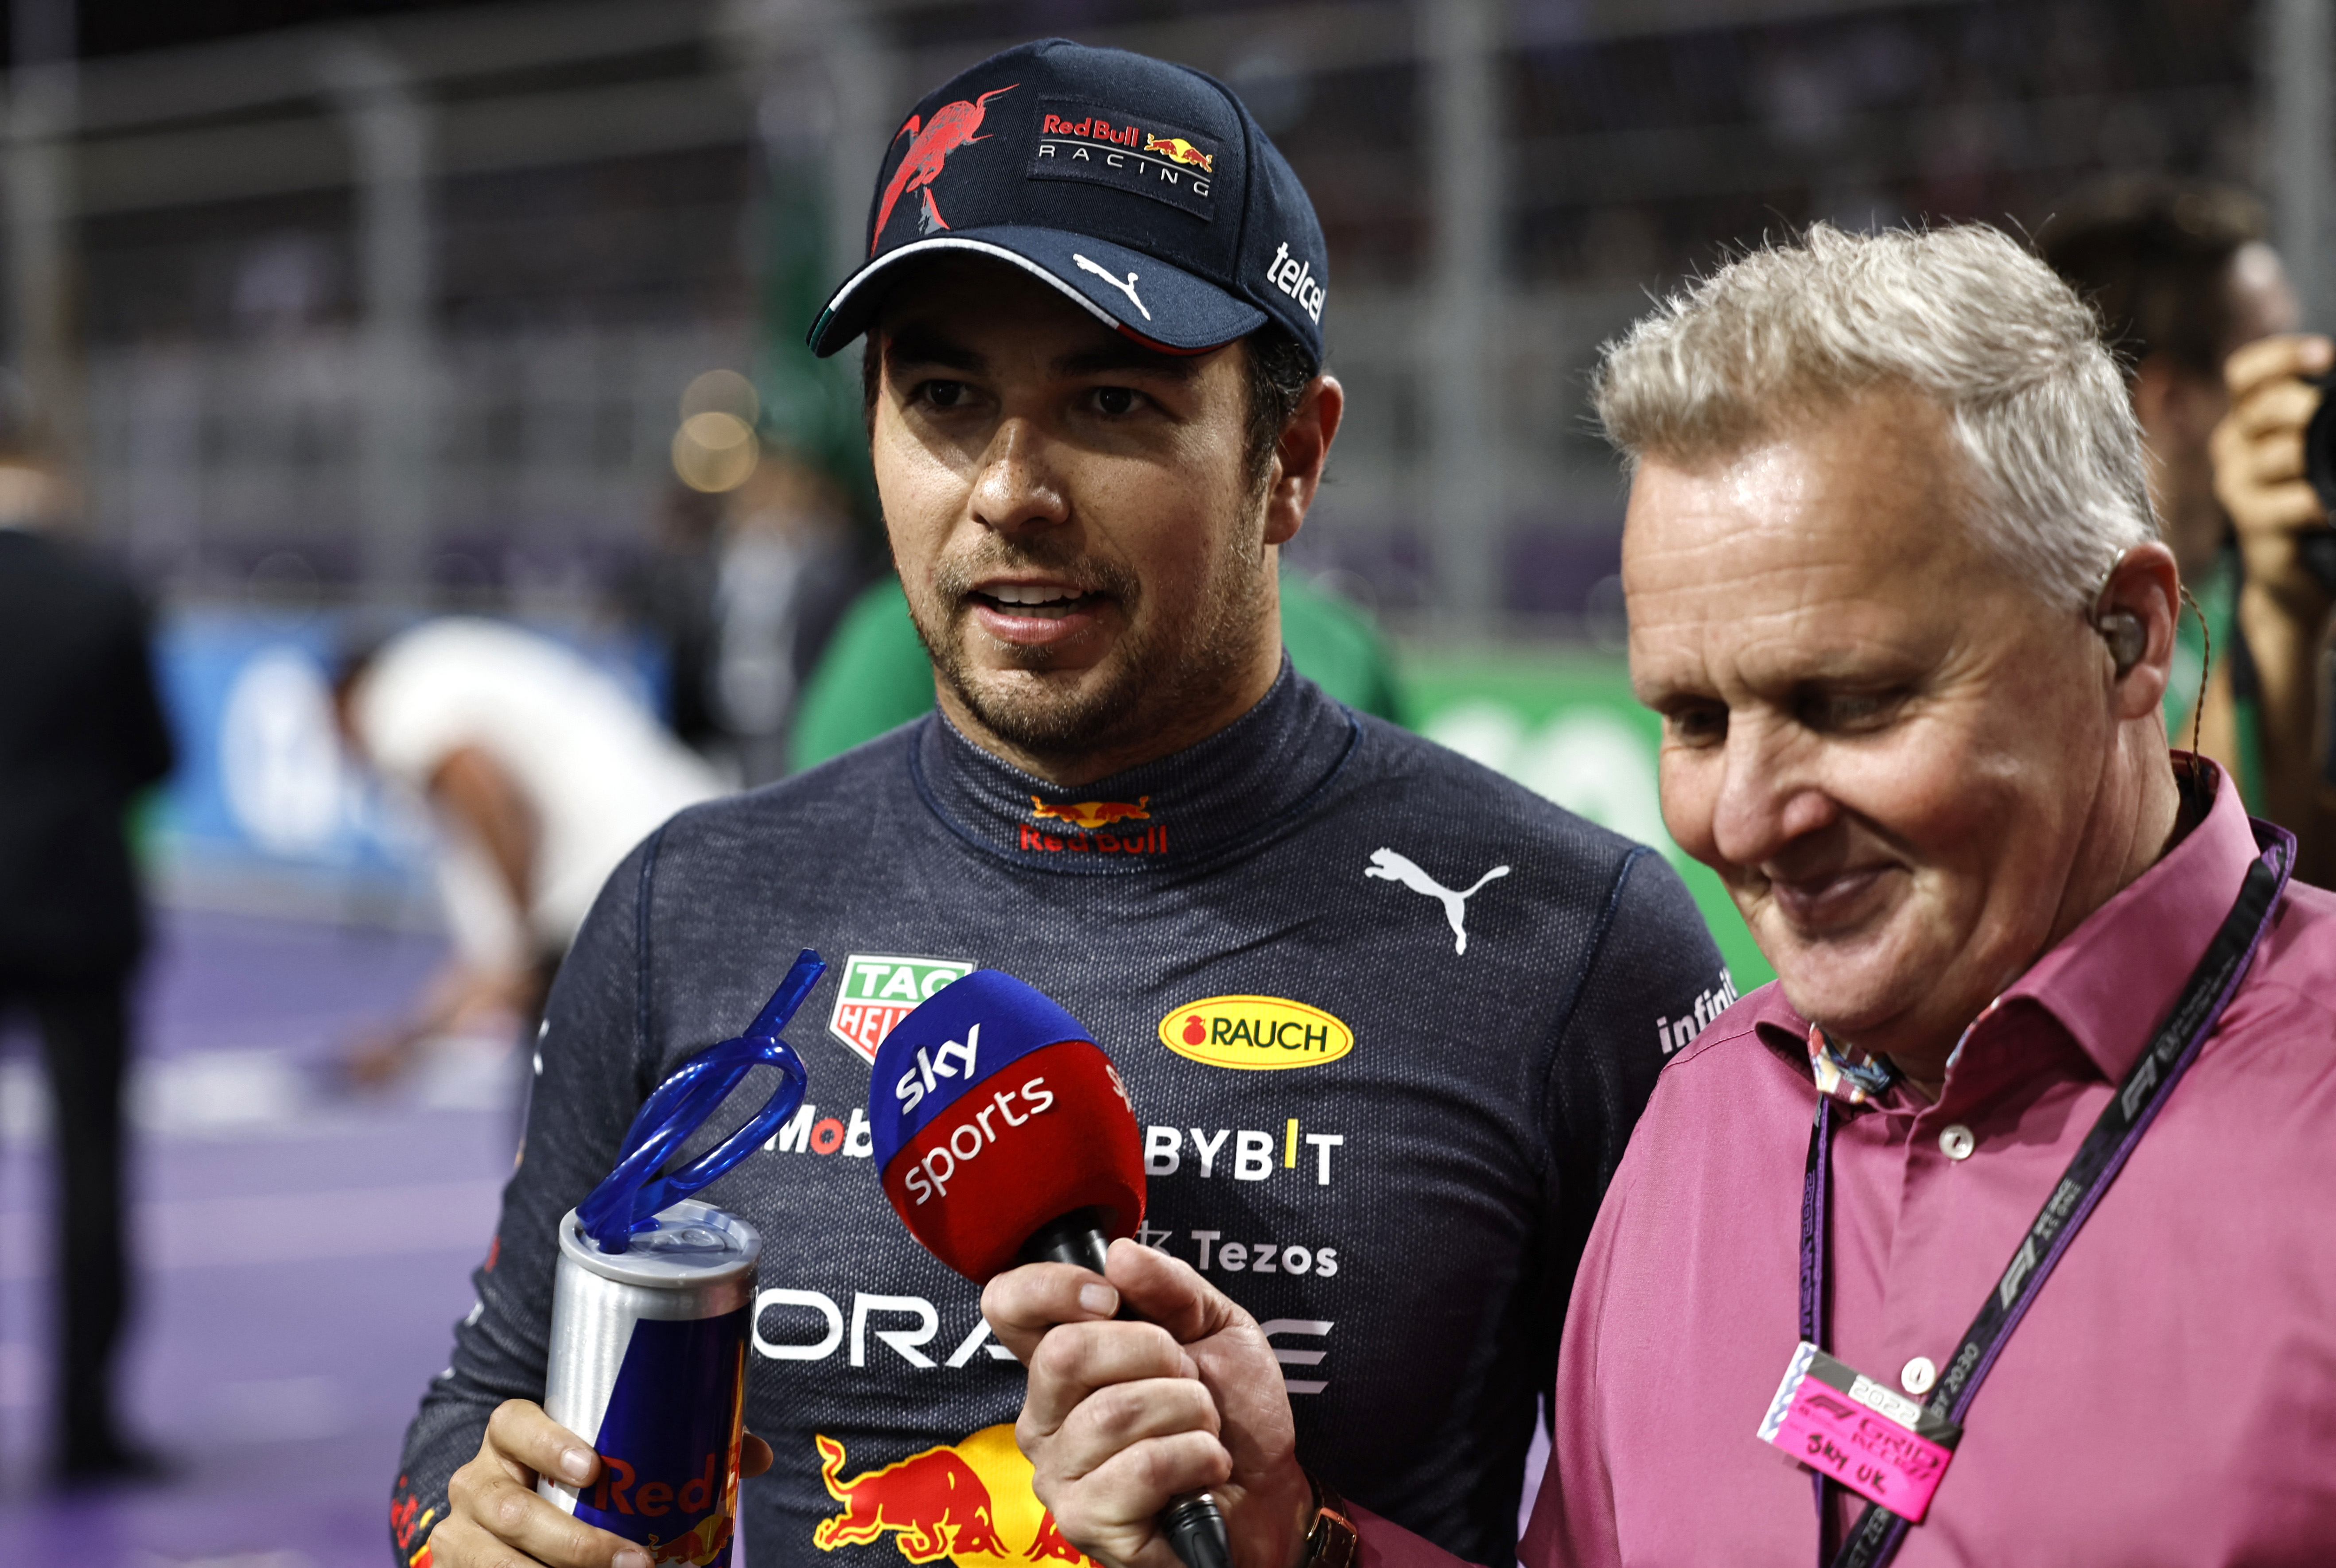 Czech ofreció unas palabras a los medios de Fórmula 1 (Foto: REUTERS/Hamad I Mohammed)